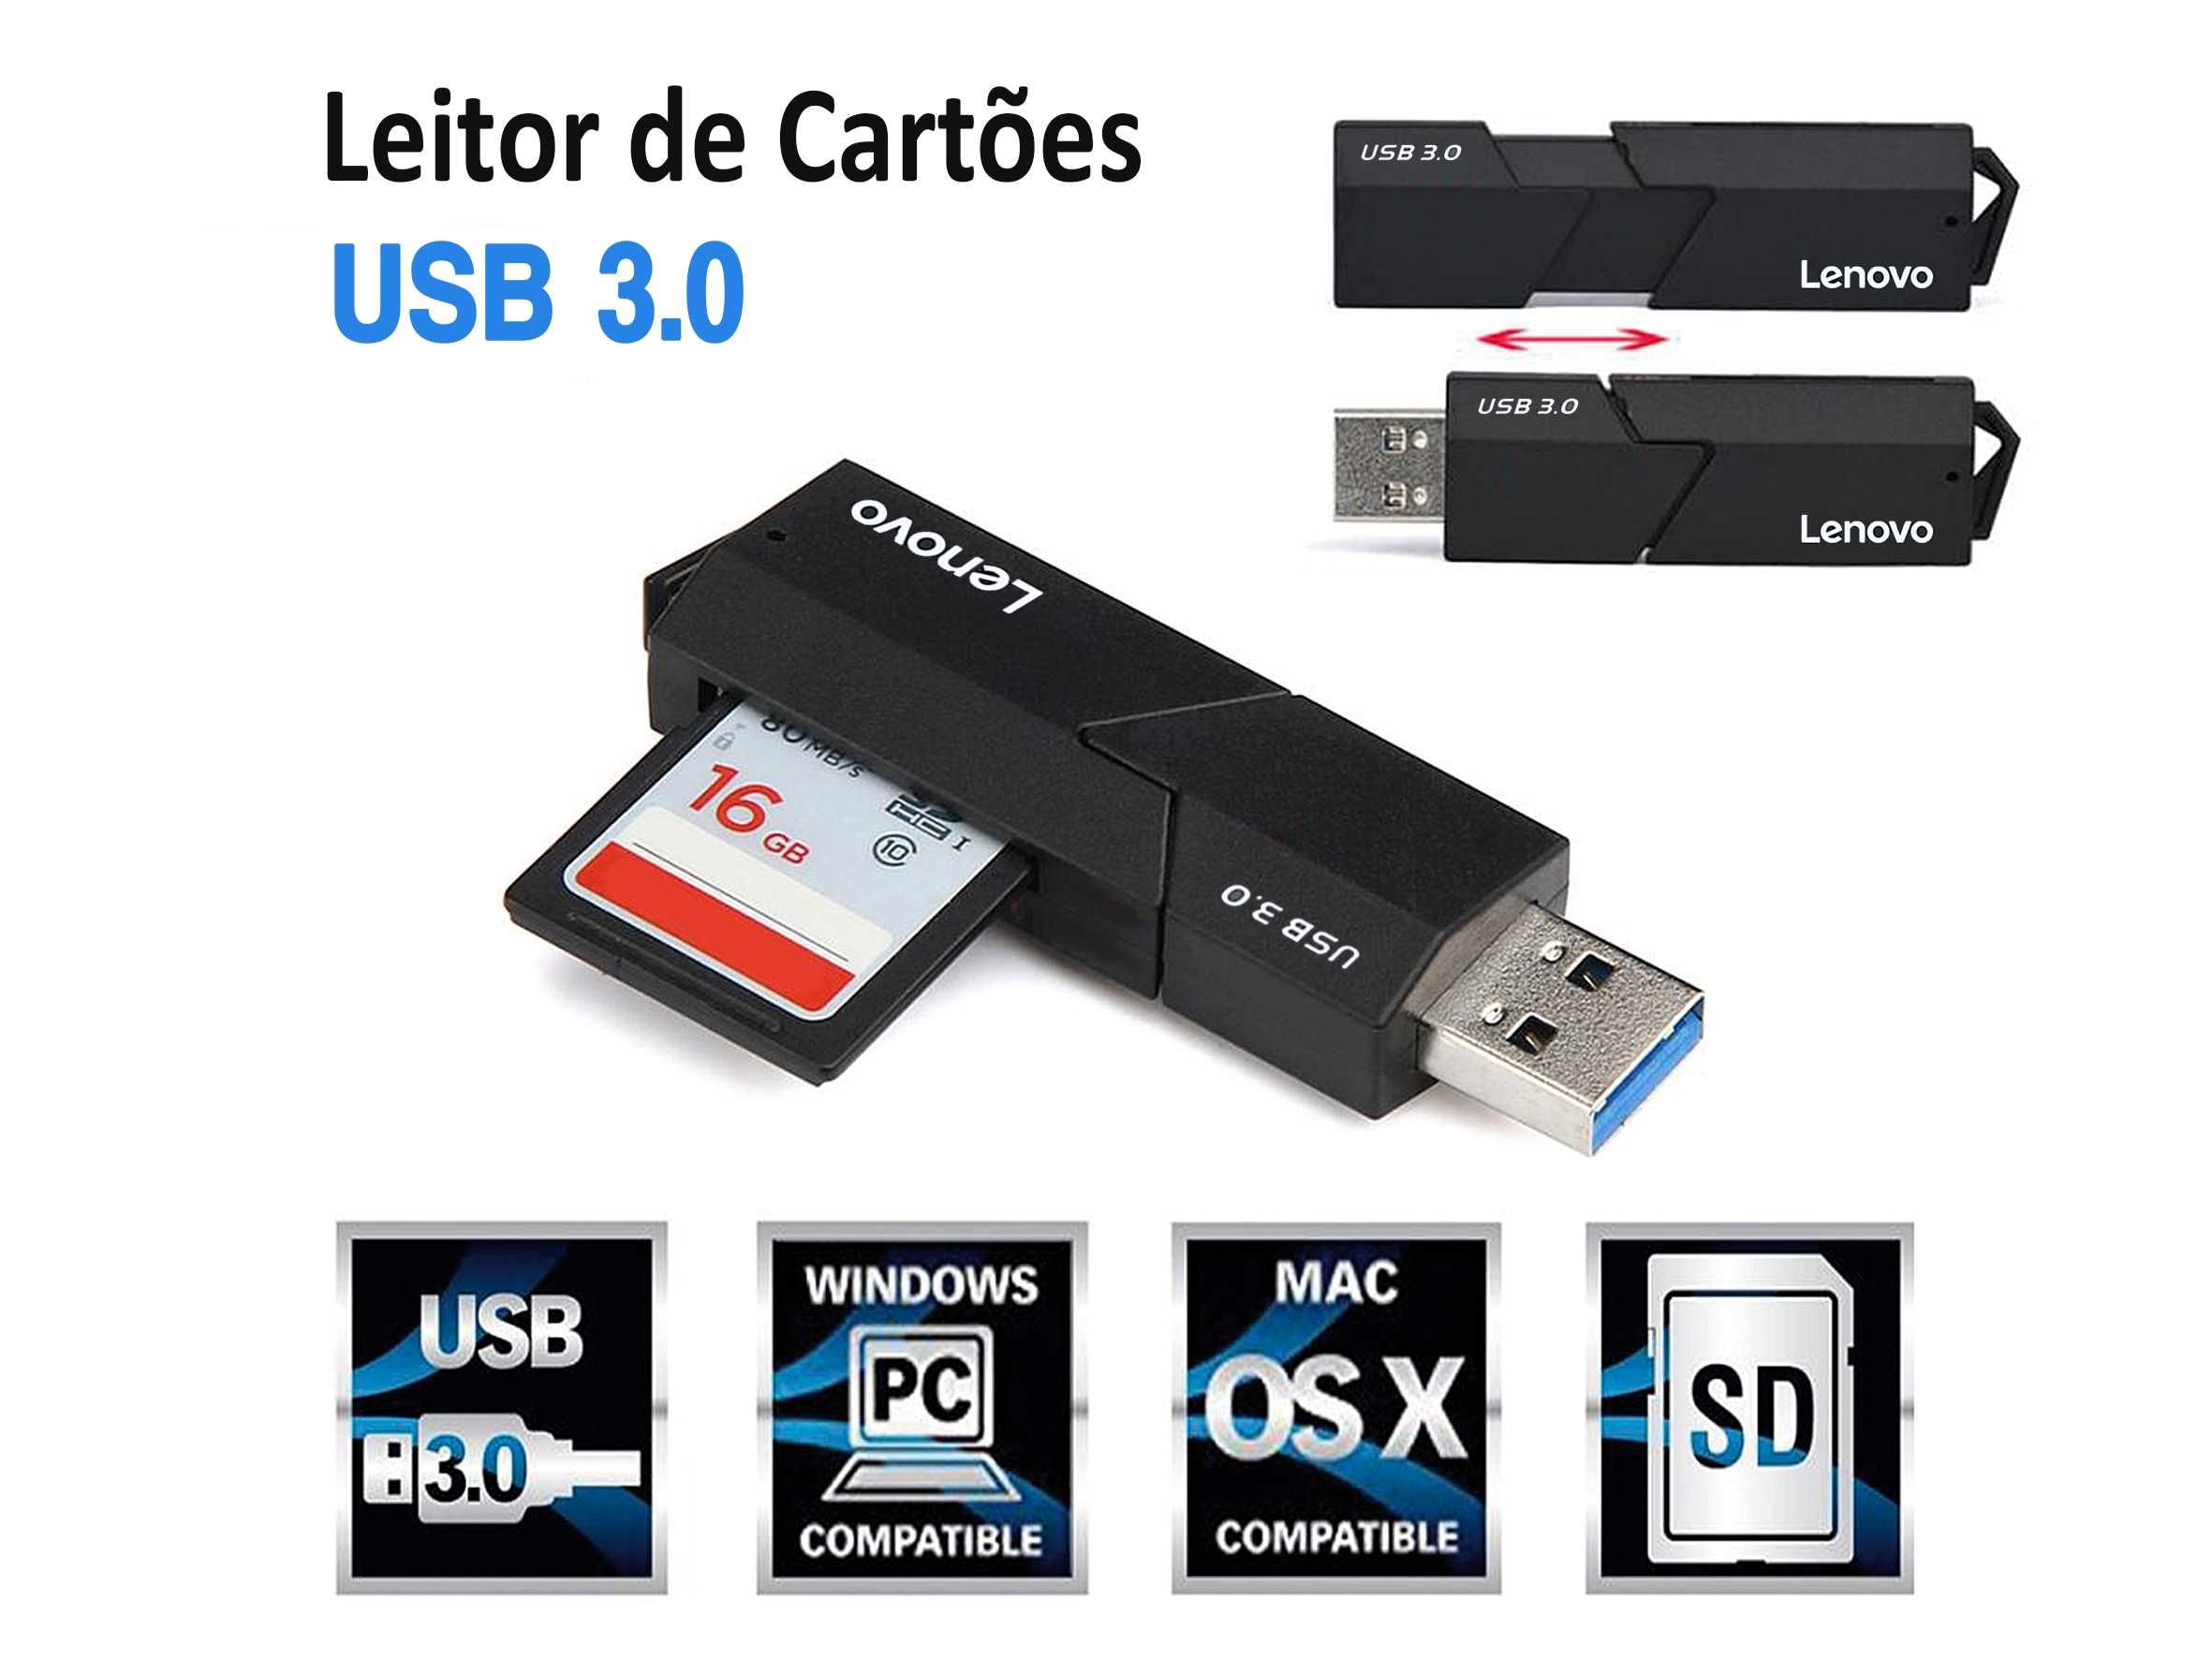 Leitor de cartões Lenovo USB 3.0 para micro SD SDXC TF